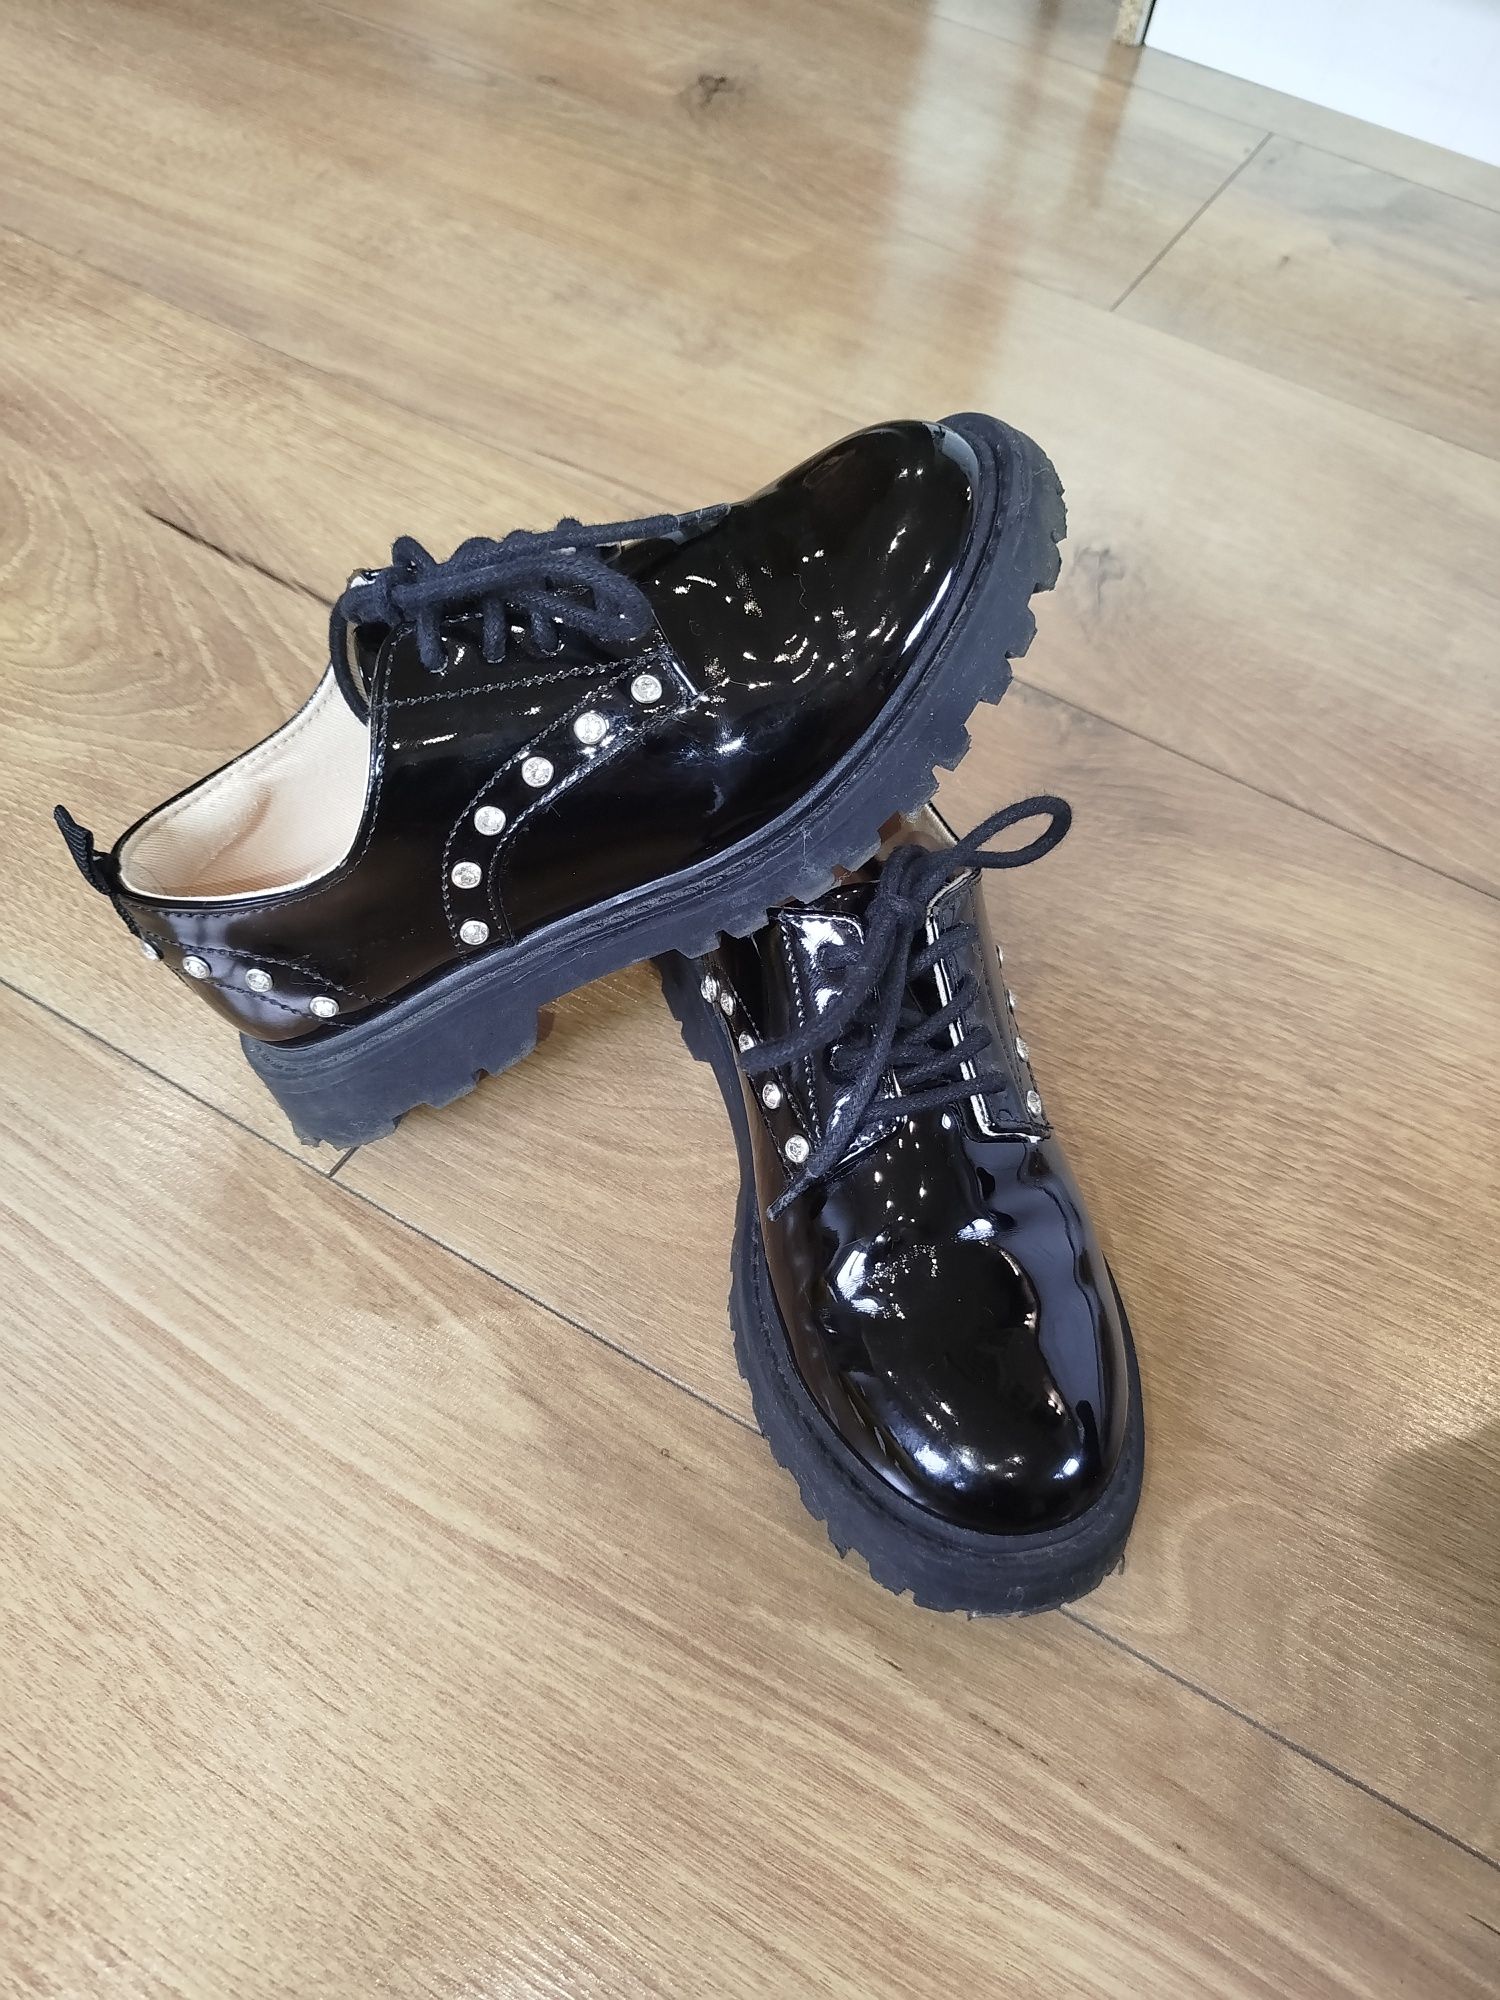 Buty tenisówki, loafersy, Zara 31